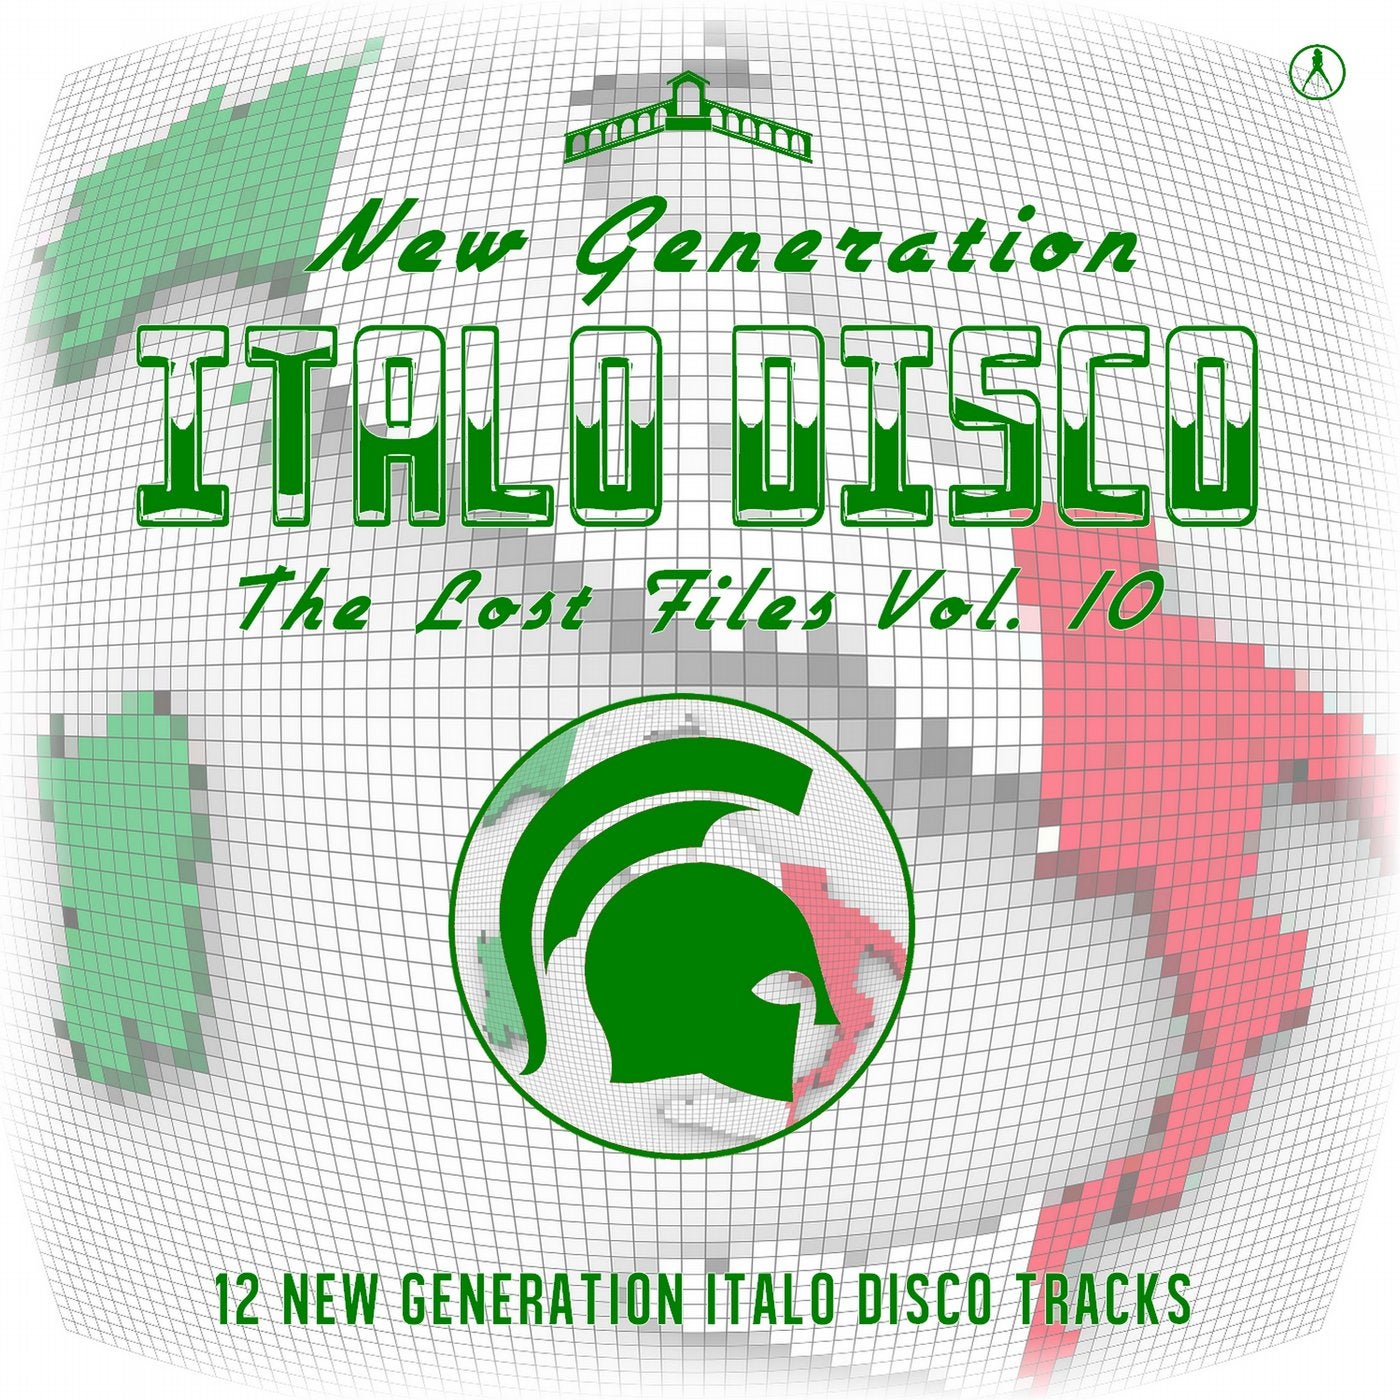 New Generation Italo Disco - The Lost Files, Vol. 10